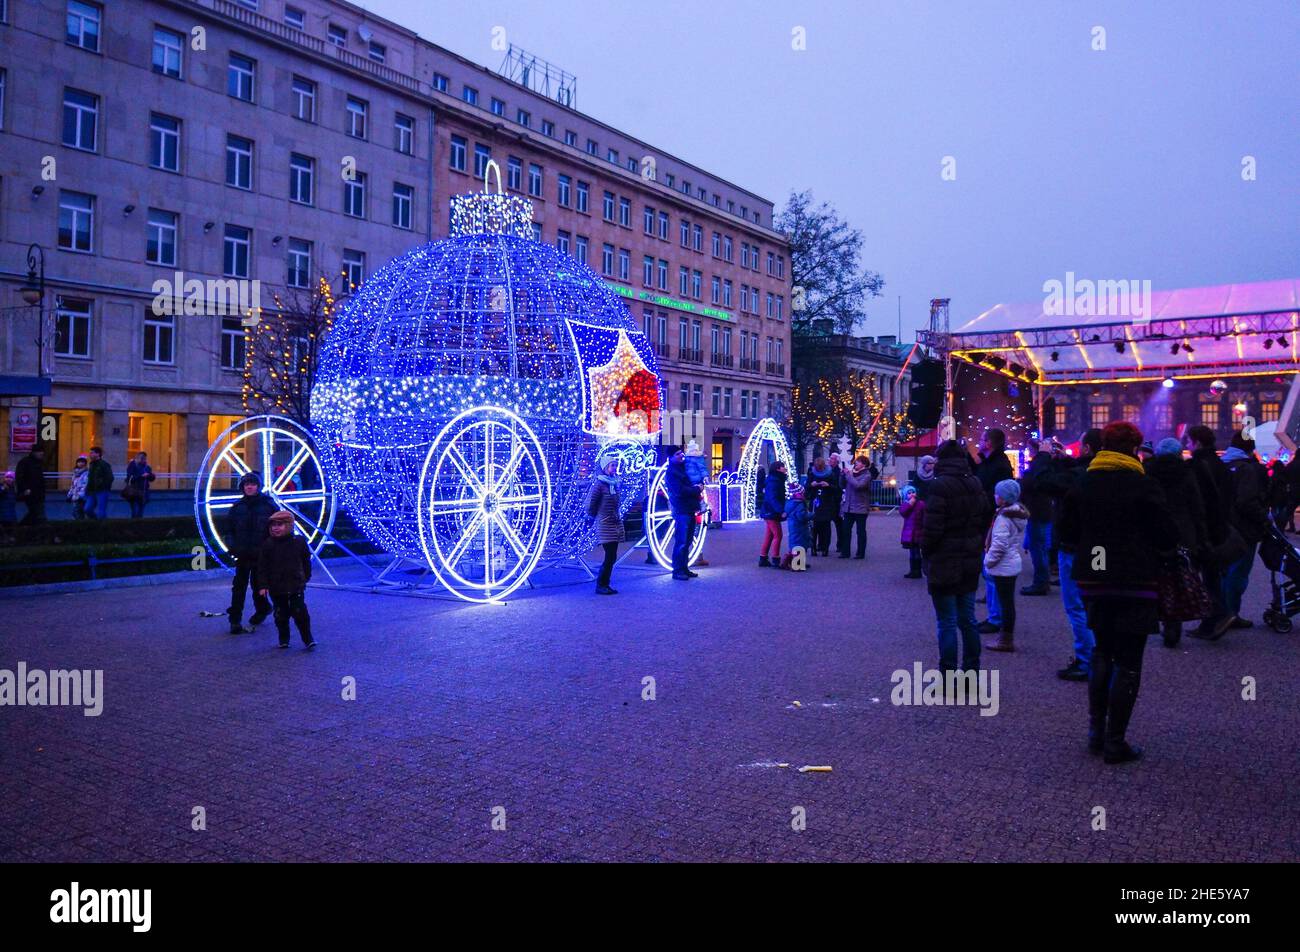 Vue de nombreuses personnes sur la place avec chariot de Noël et lampes la nuit. Banque D'Images